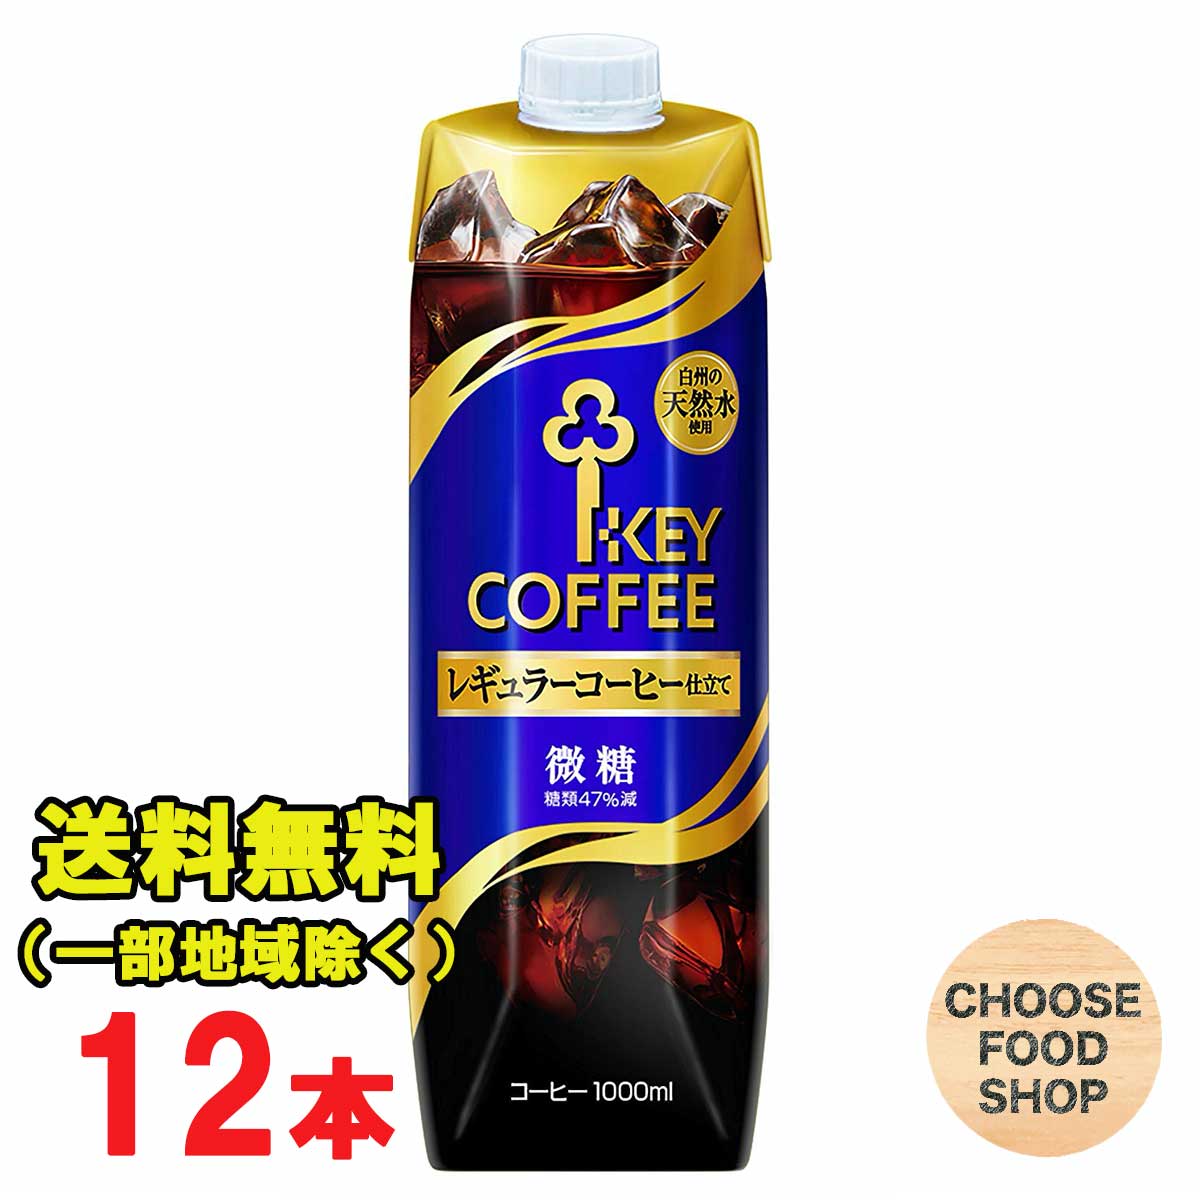 送料無料 北海道 東北 沖縄除く キーコーヒー 微糖 日本最級 1L×6本×2ケース リキッドコーヒー 天然水 当店だけの限定モデル